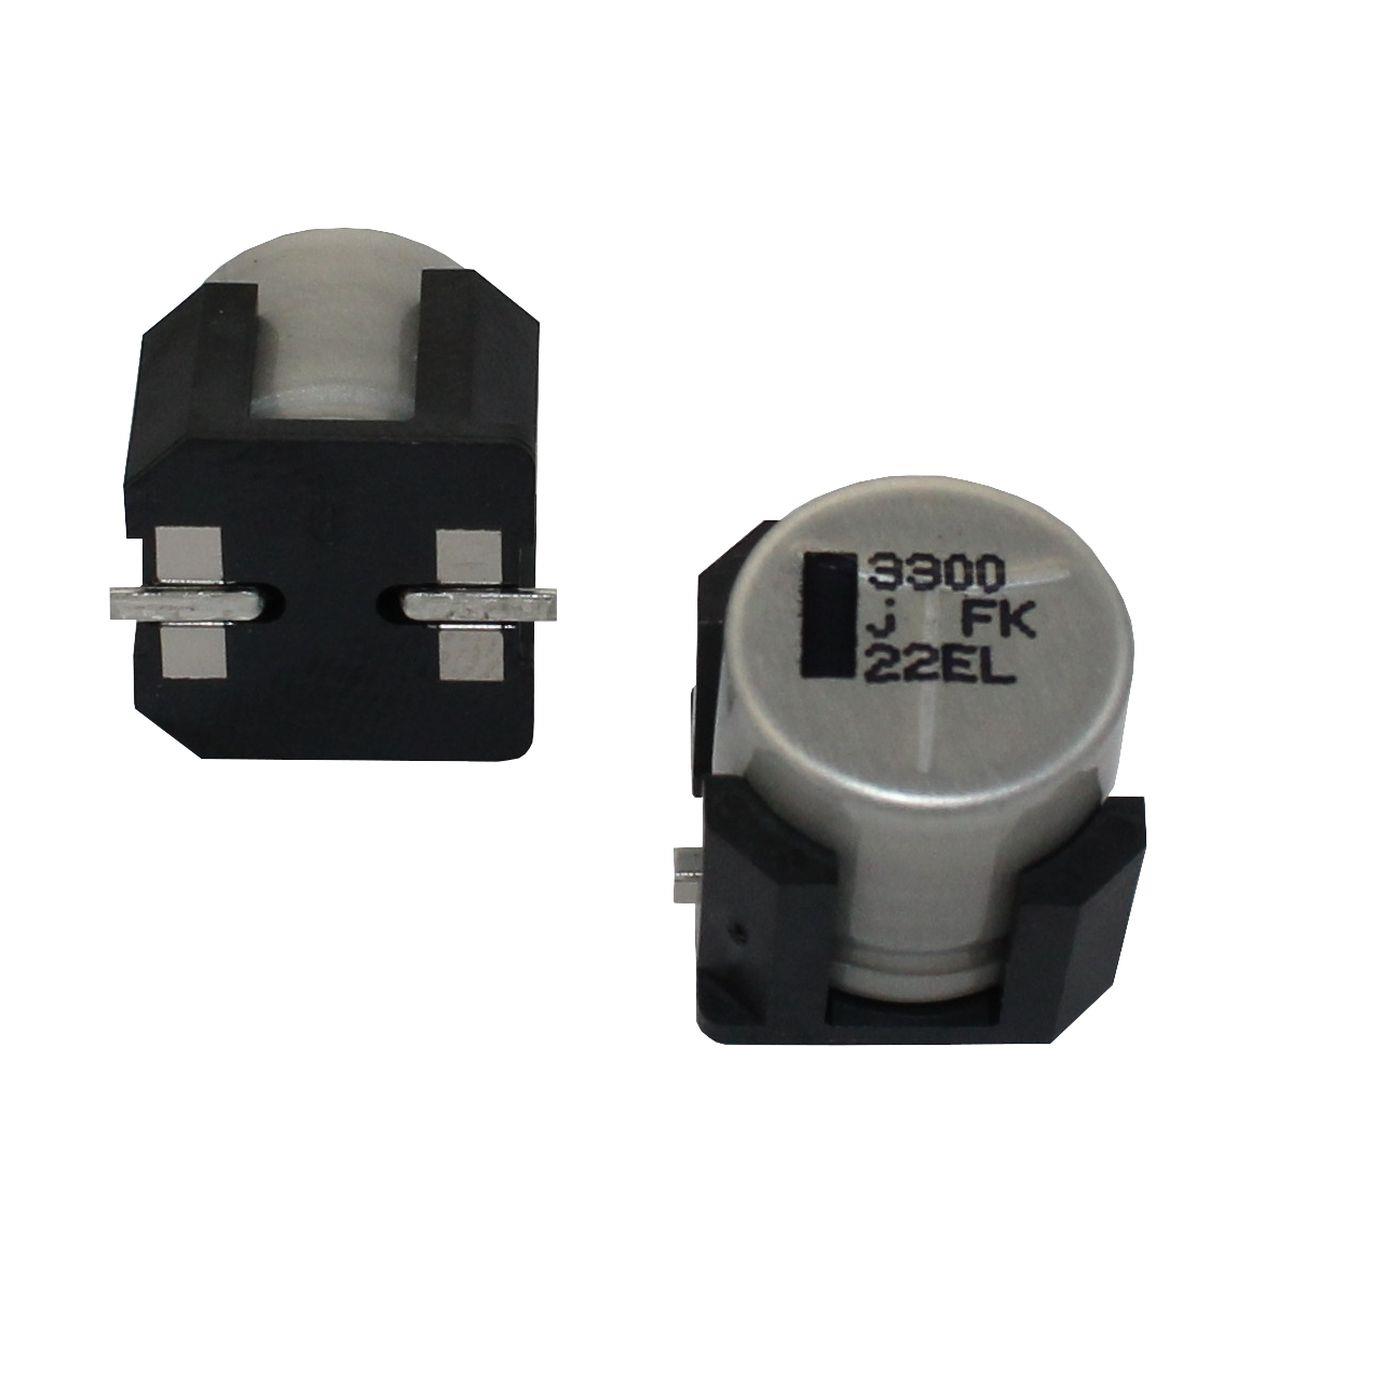 SMD Electrolytic capacitor 3300µF 6,3V 85°C EEVFK0J332V d12,5x14mm 3300uF